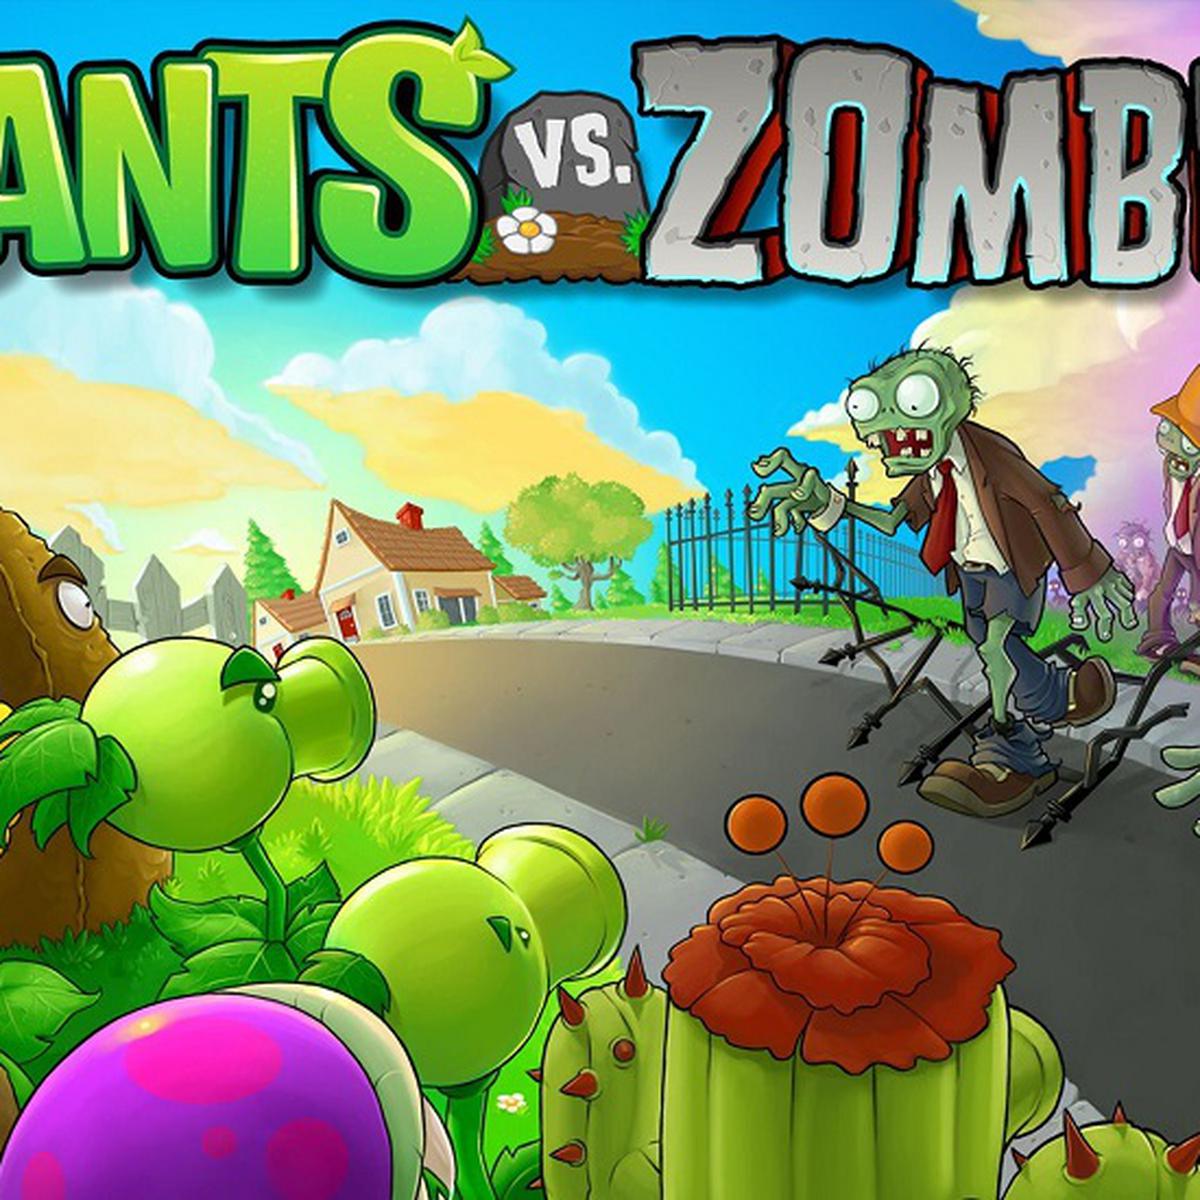 Creador de Plantas vs. Zombies celebra 10 años del videojuego publicando  bocetos originales | TECNOLOGIA | EL COMERCIO PERÚ